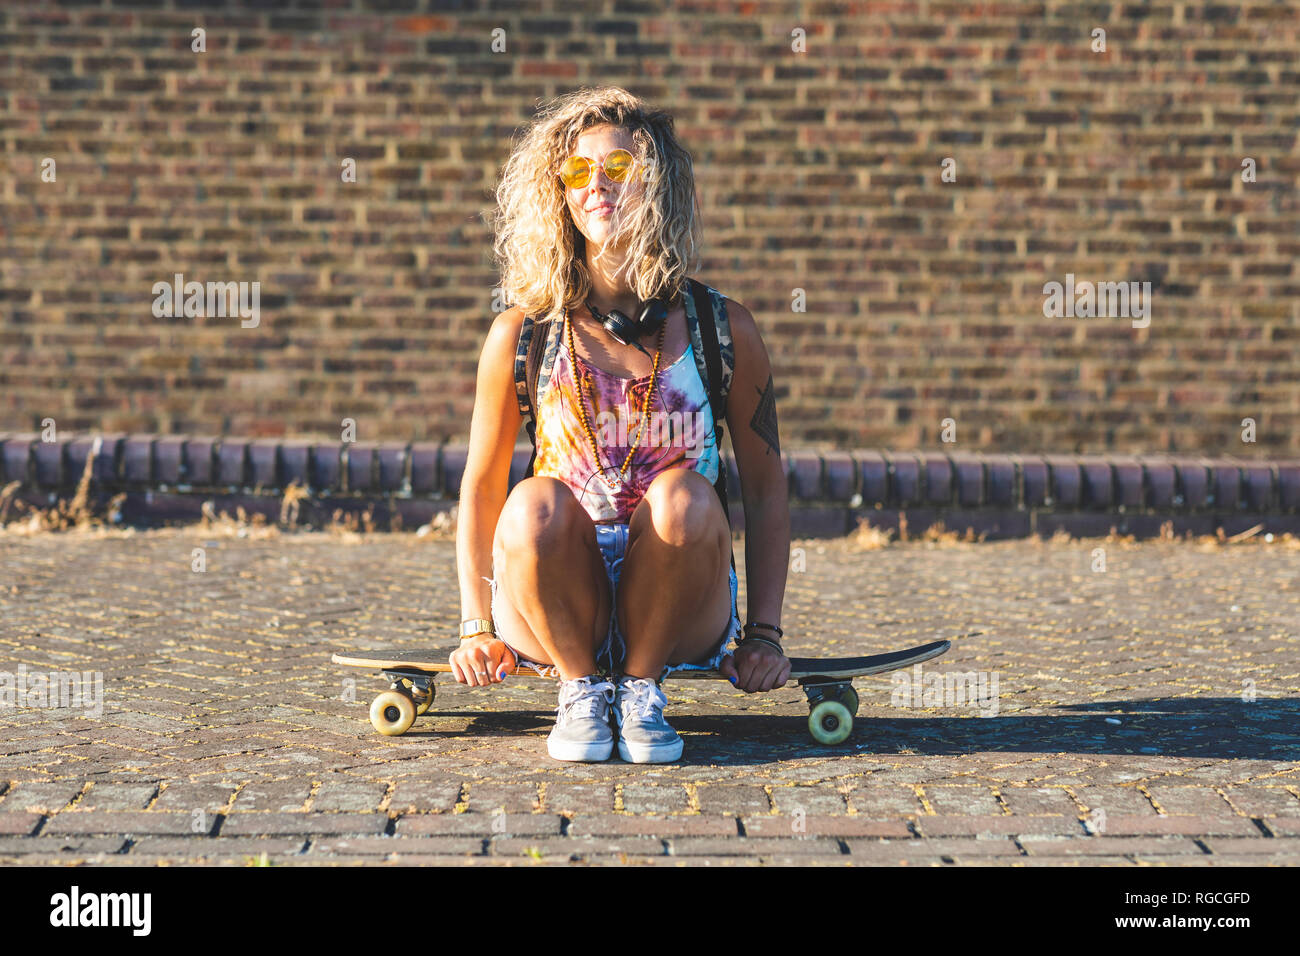 Giovane donna seduta su uno skateboard con un muro di mattoni in background Foto Stock